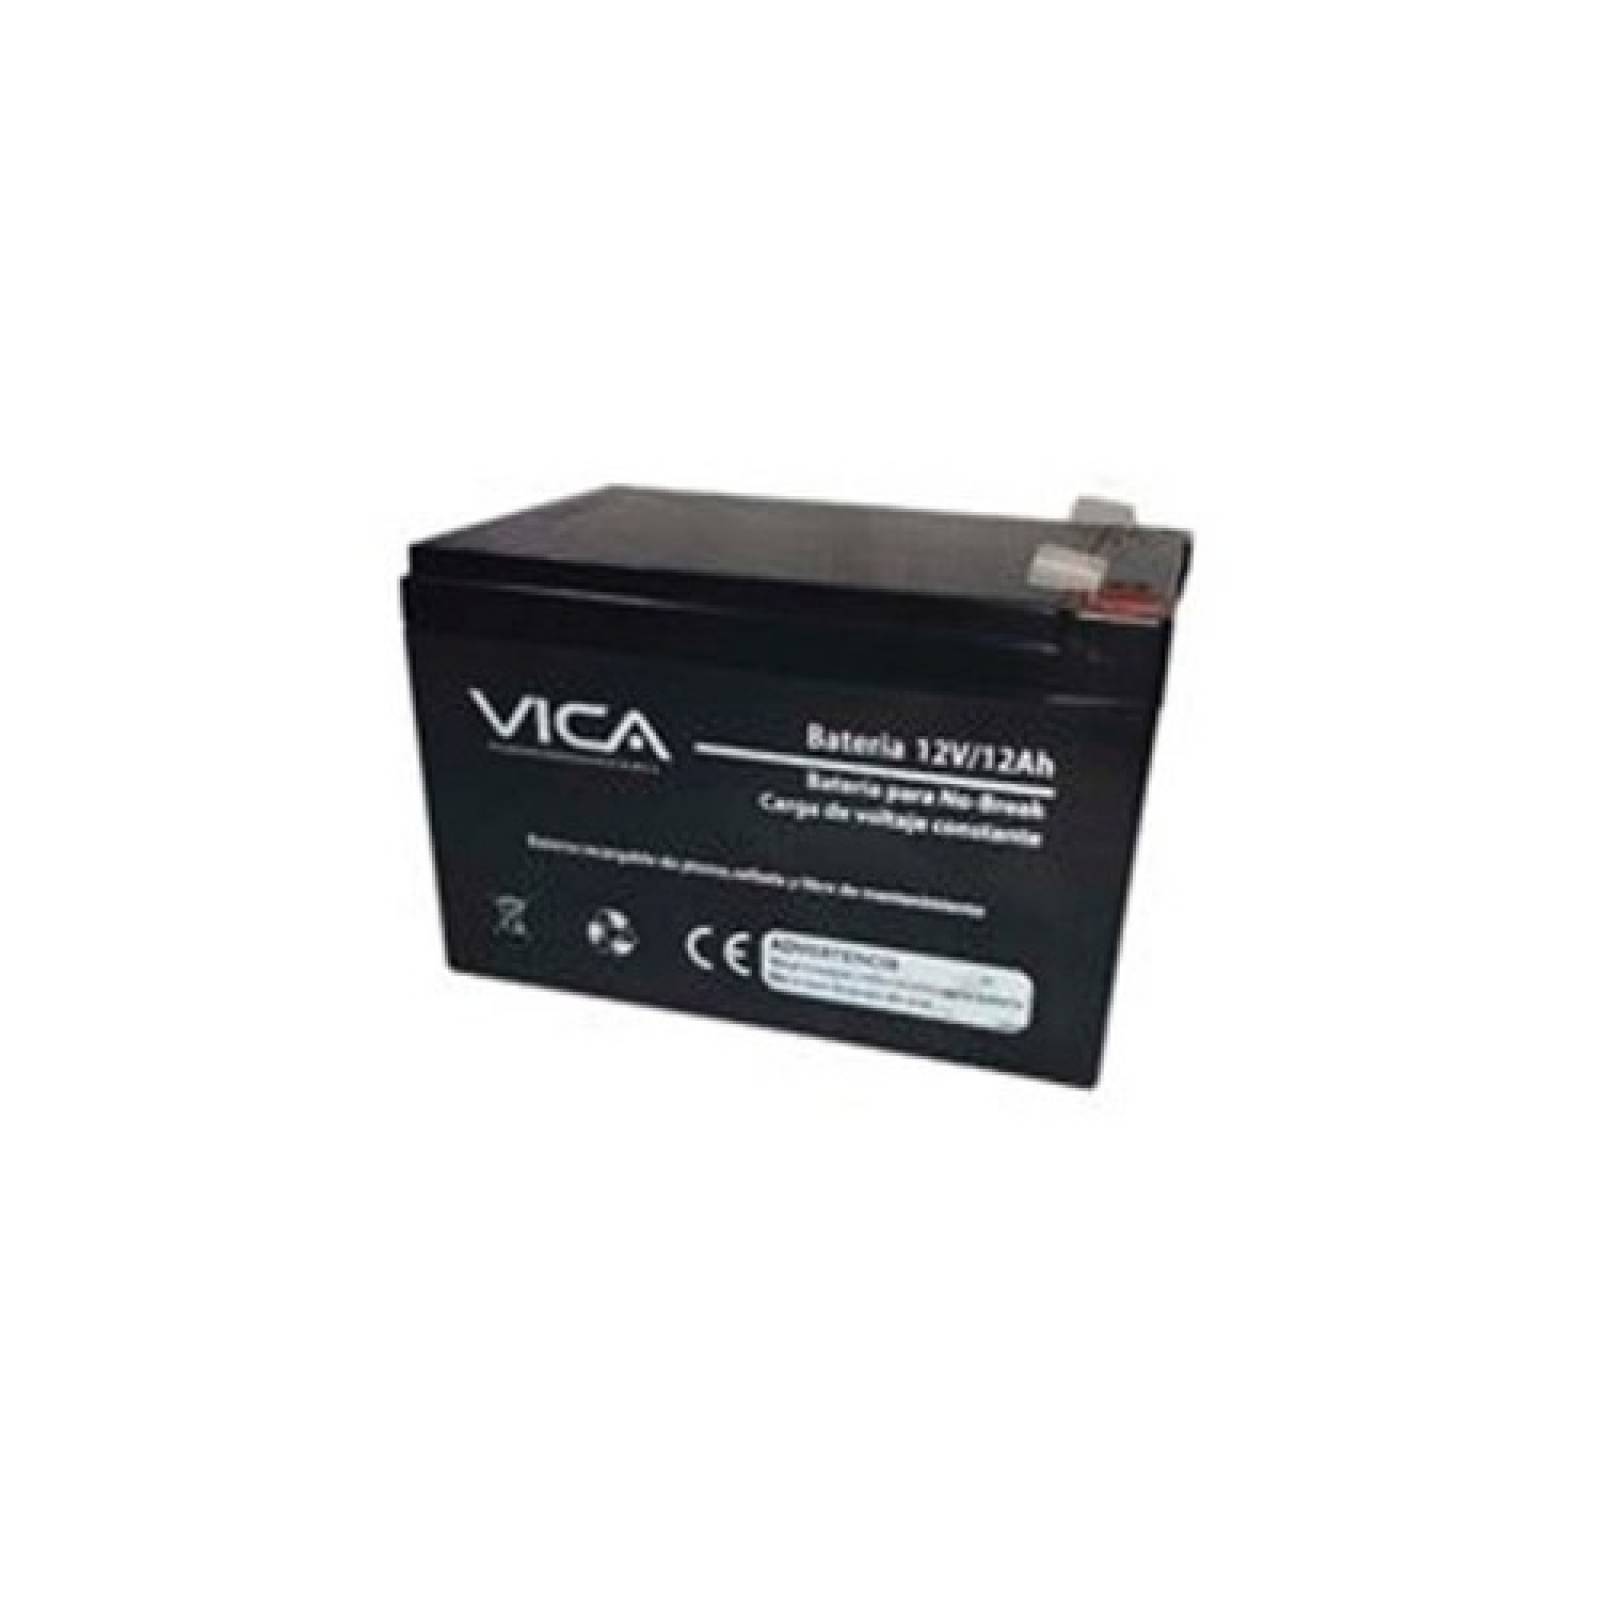 Bateria Reemplazo Voltaje 12 V - 12A Vica